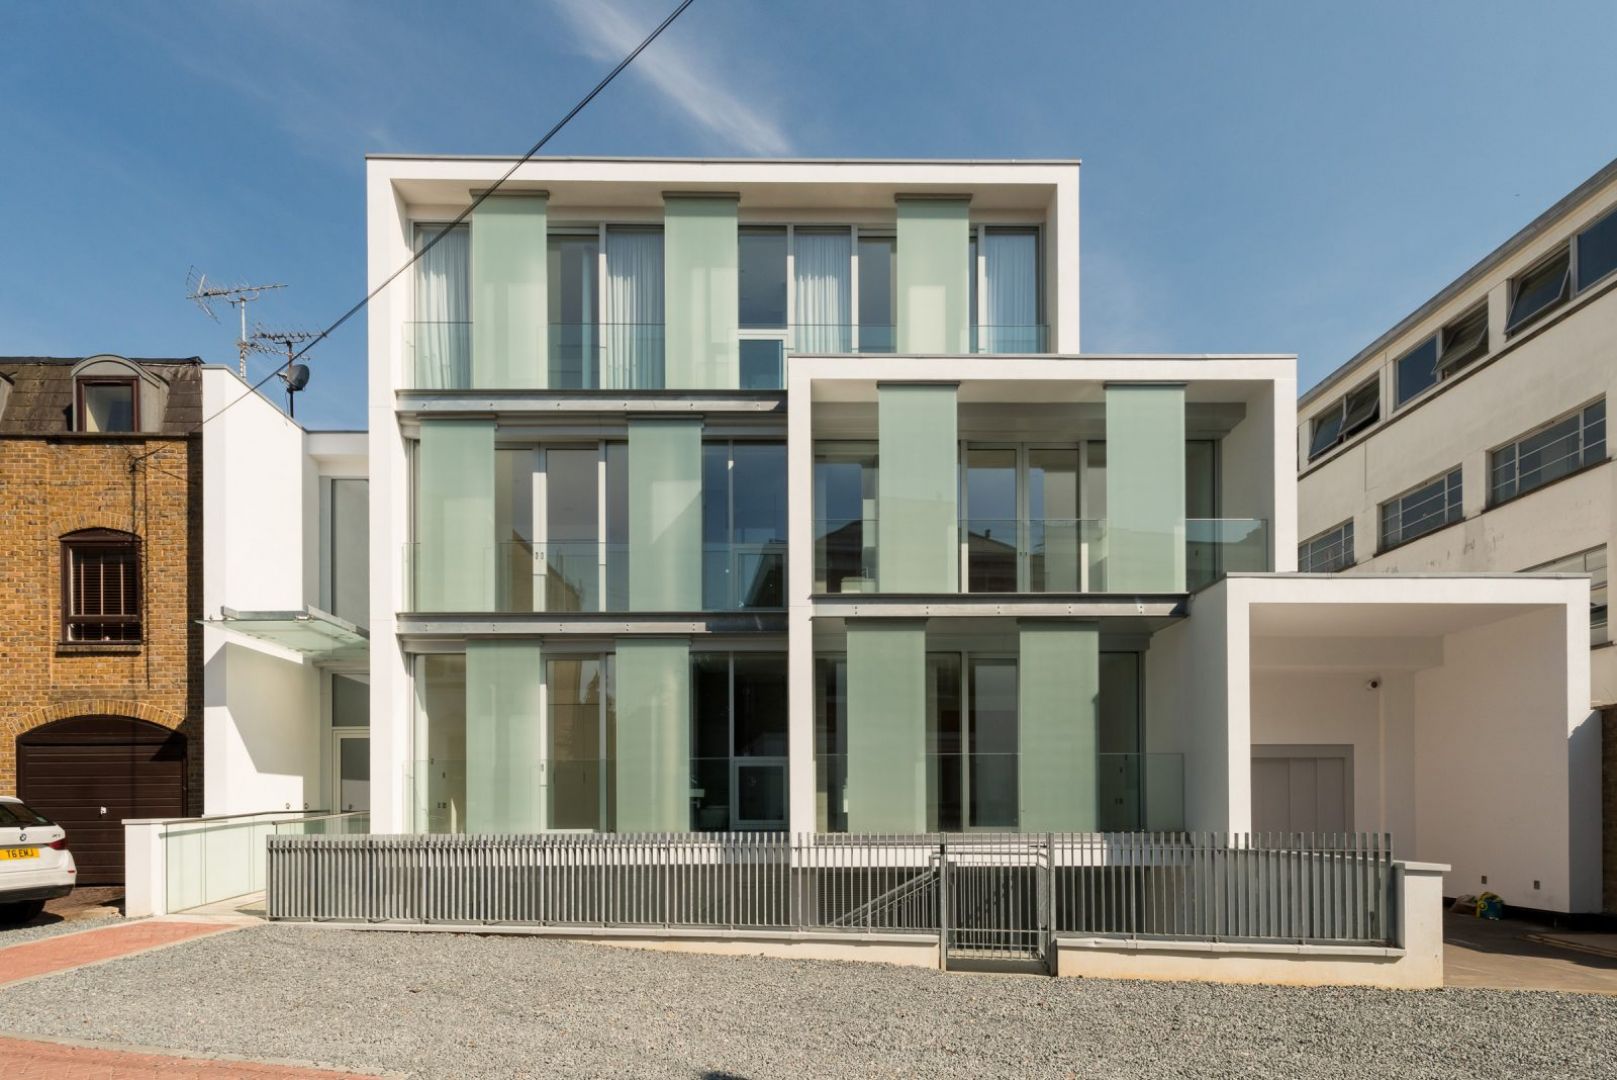 Szkło odgrywa kluczową rolę w konstrukcji tego domu. Fot. The Modern House